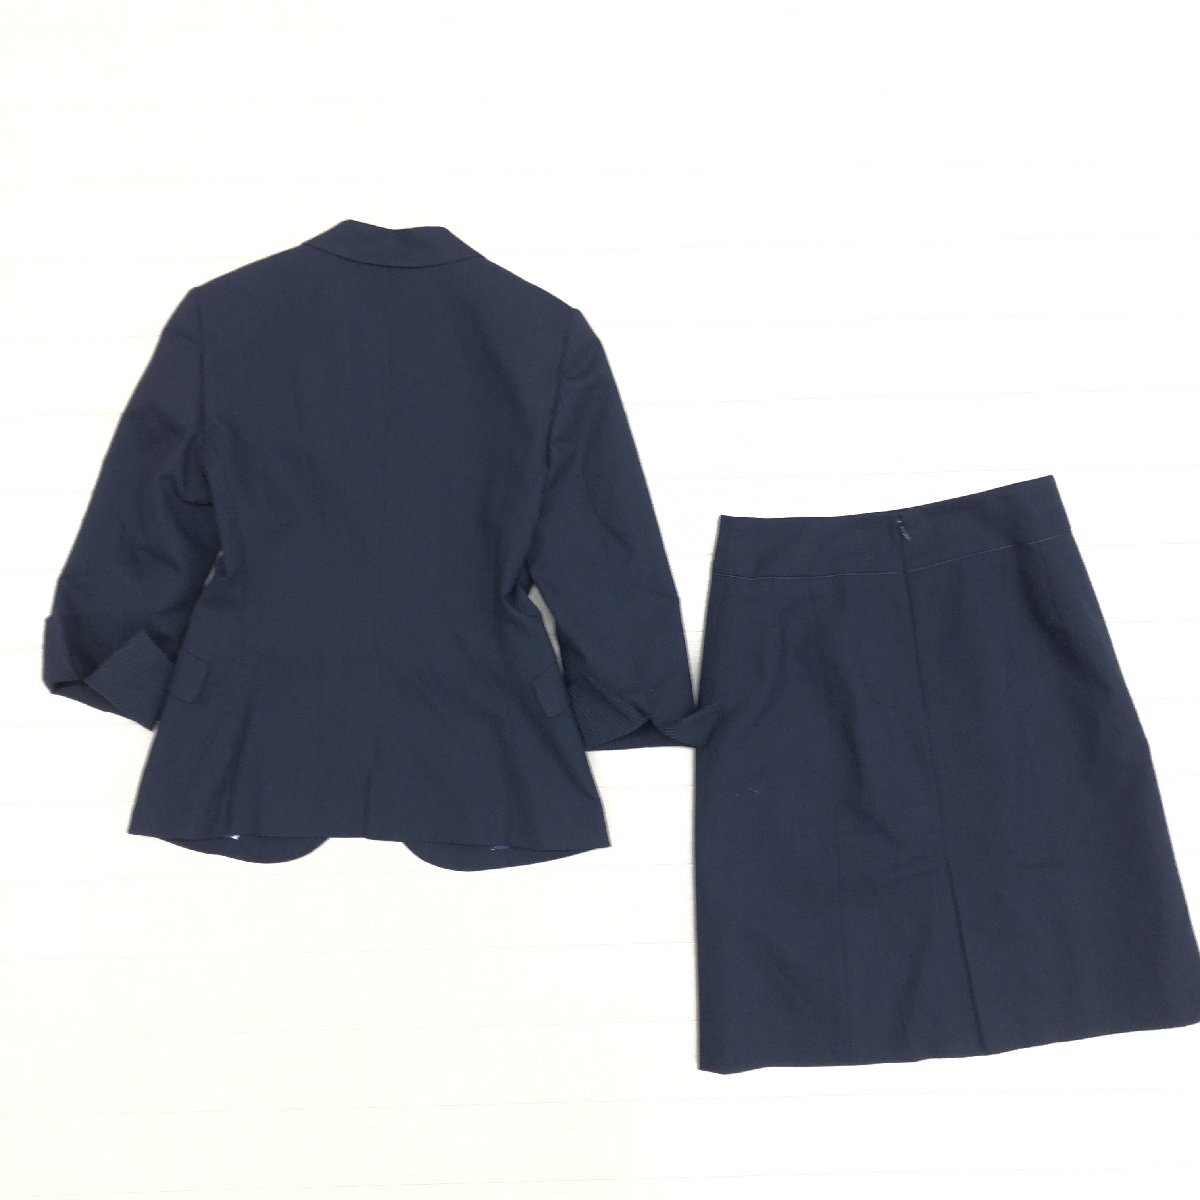 ●ORIHICA RHYME オリヒカ ウォッシャブル 1B スカートスーツ 7(S) 濃紺 ネイビー ジャケット 七分袖 春夏用 国内正規品 レディース 女性用の画像2